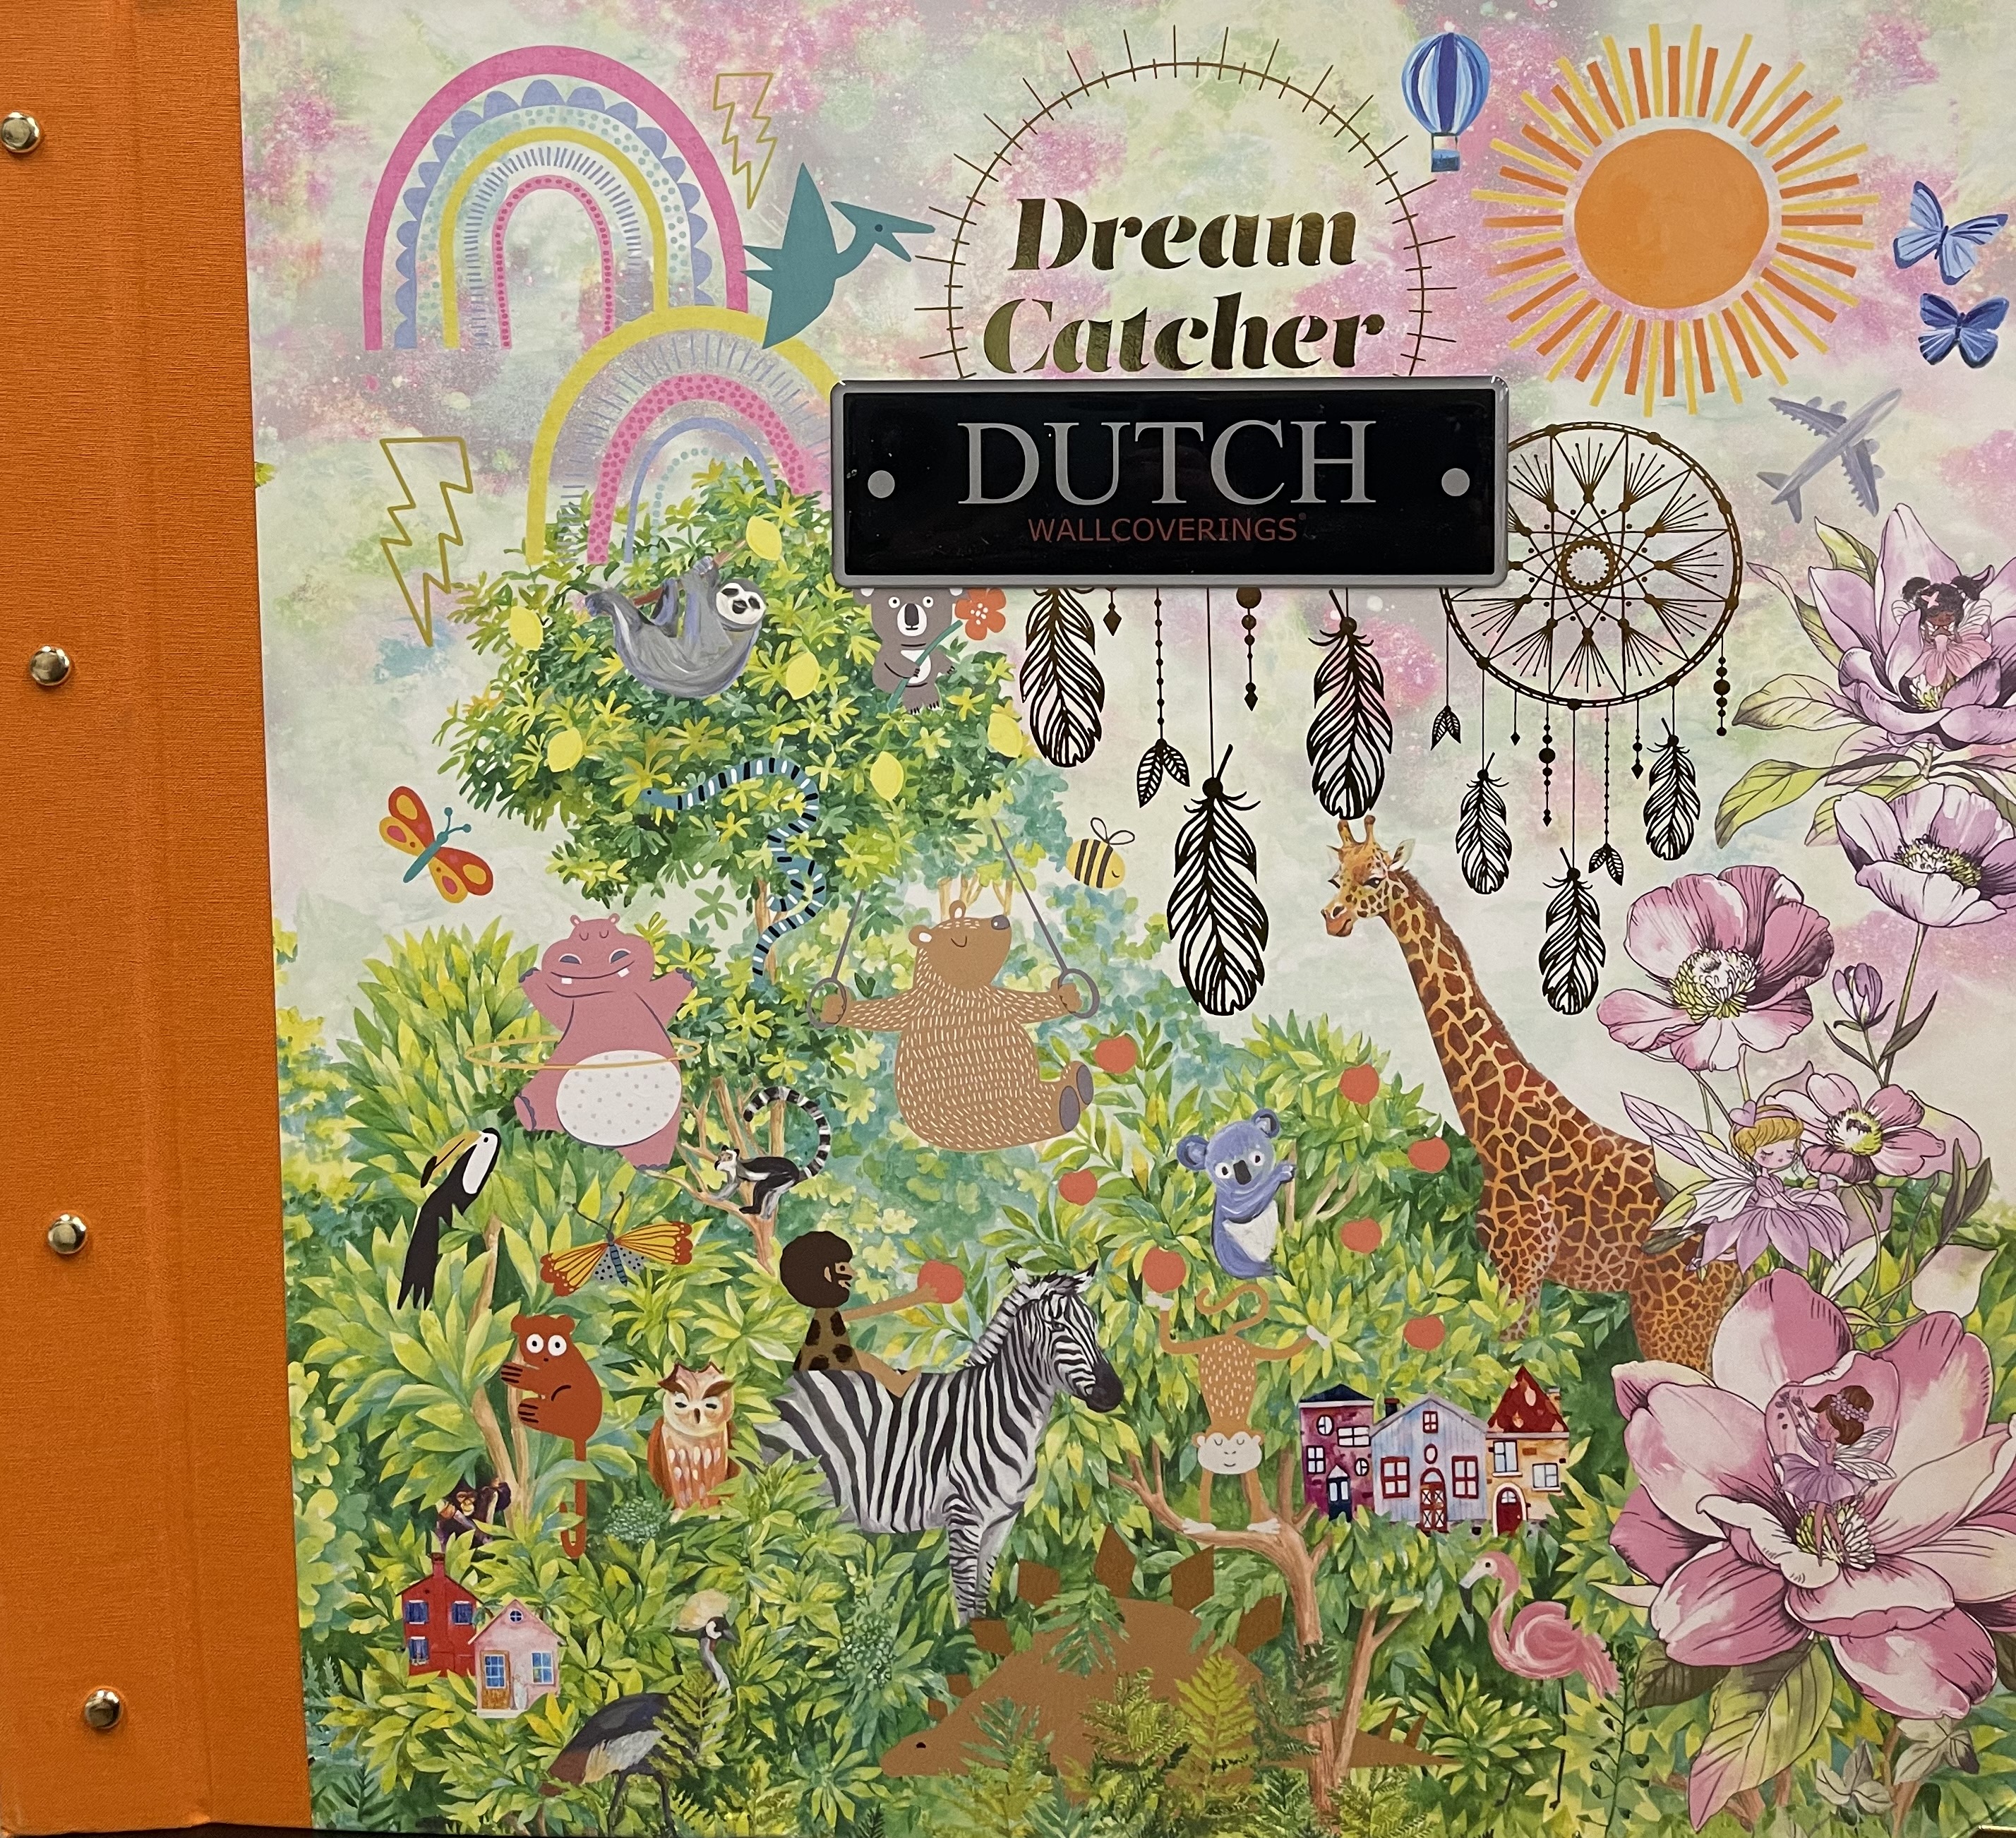 Wallpaper - Dreamcatcher - Dutch Wallcoverings